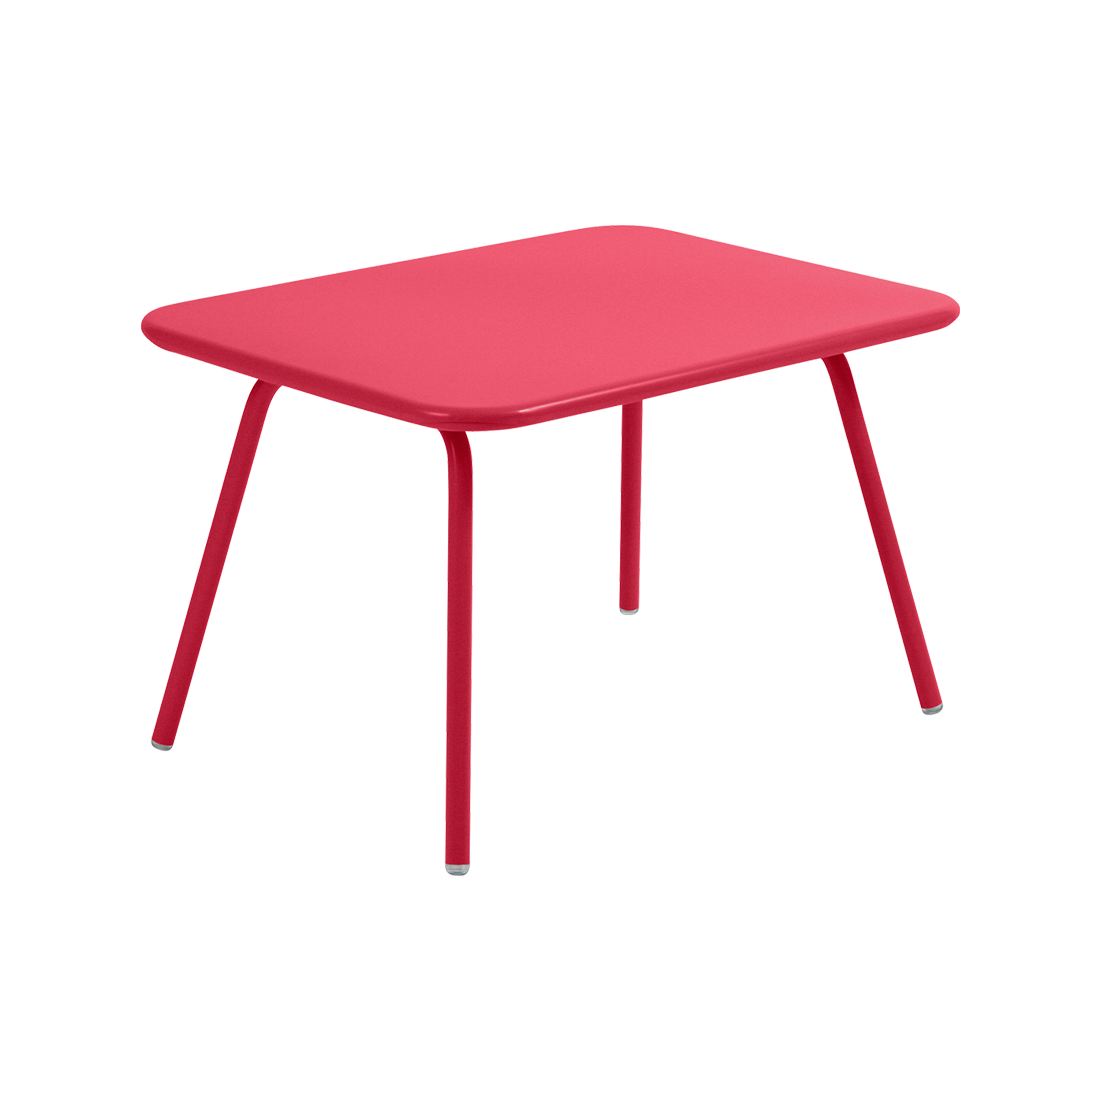 table de jardin pour enfant, table metal pour enfant, table enfant metal, table enfant rose